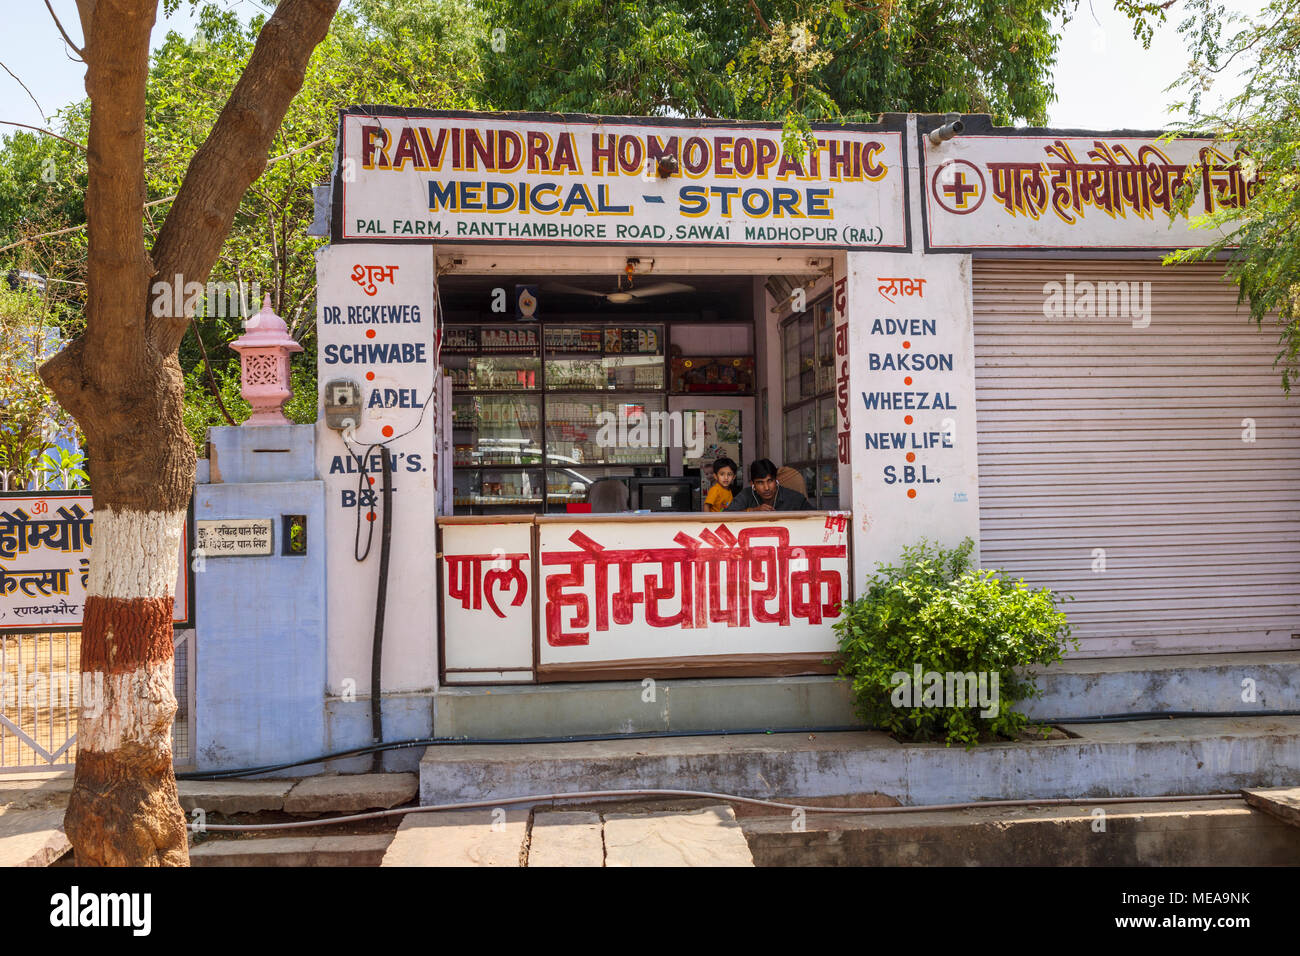 Apotheke am Straßenrand (homöopathische medizinische Store) in Sawai Madhopur, Rajasthan, Nordindien in der Nähe von Ranthambore Nationalpark Stockfoto